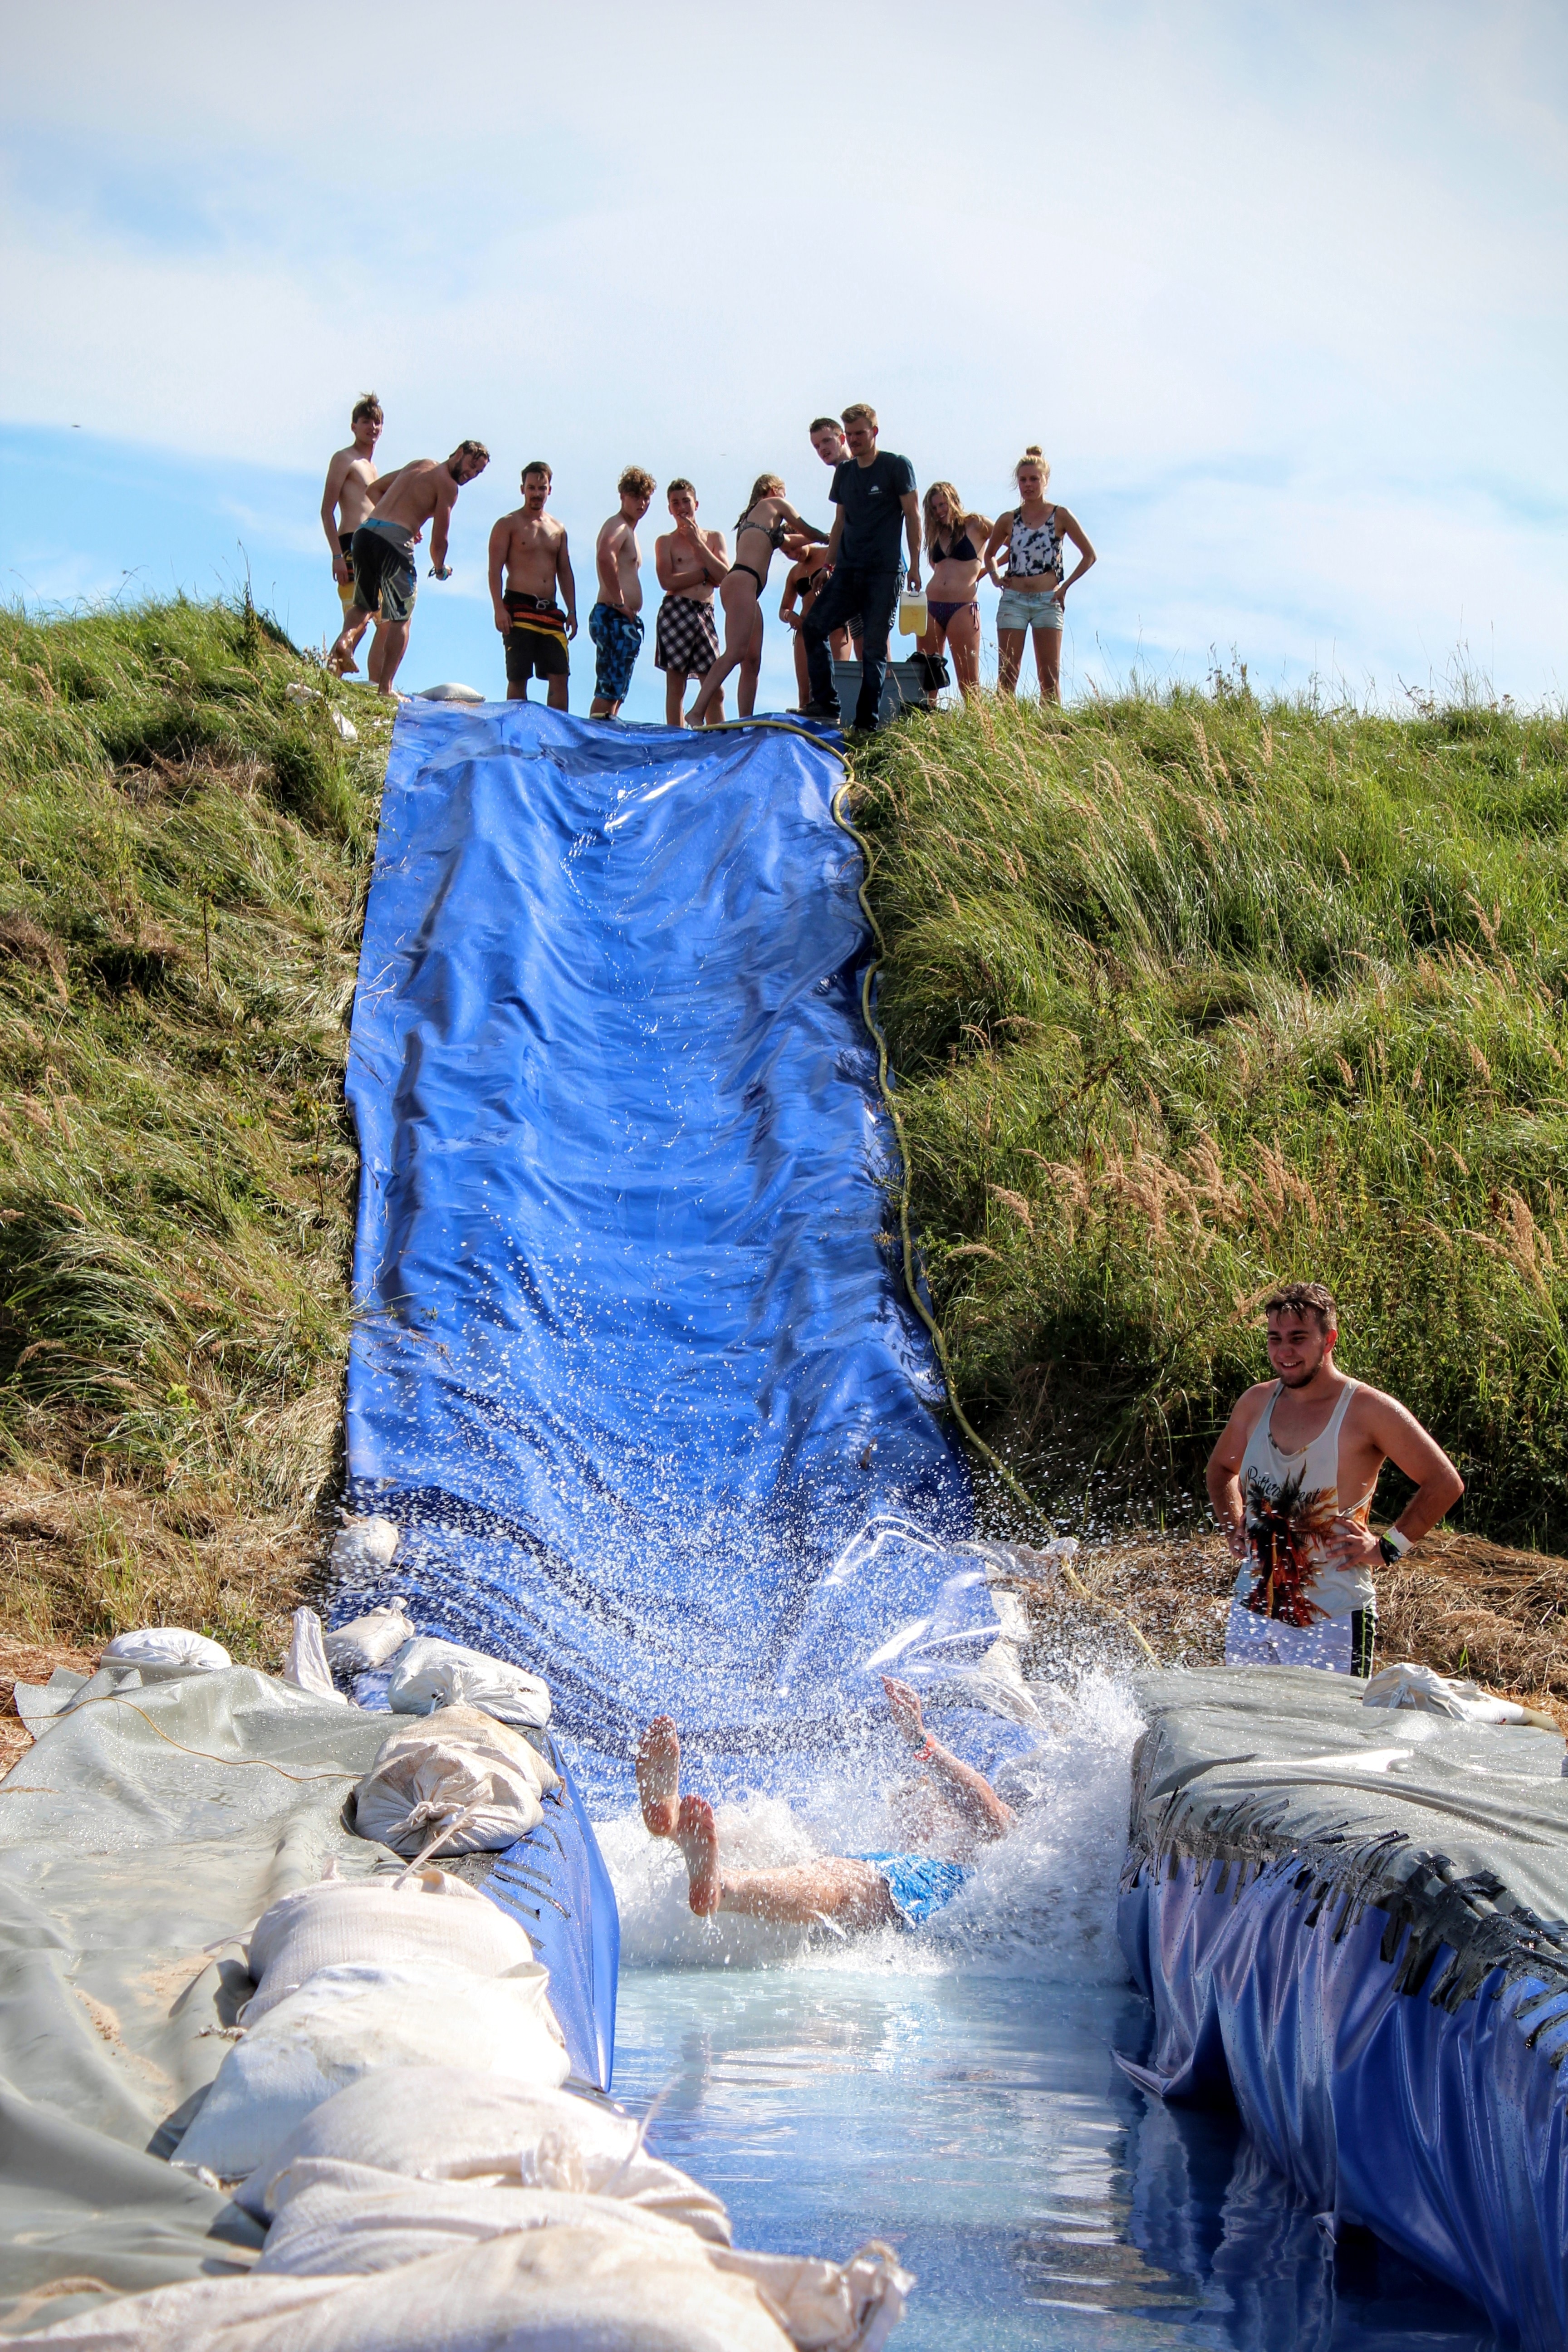 Water Slide, Slope, Fun, Eigenbau, Slip, large group of people, adult